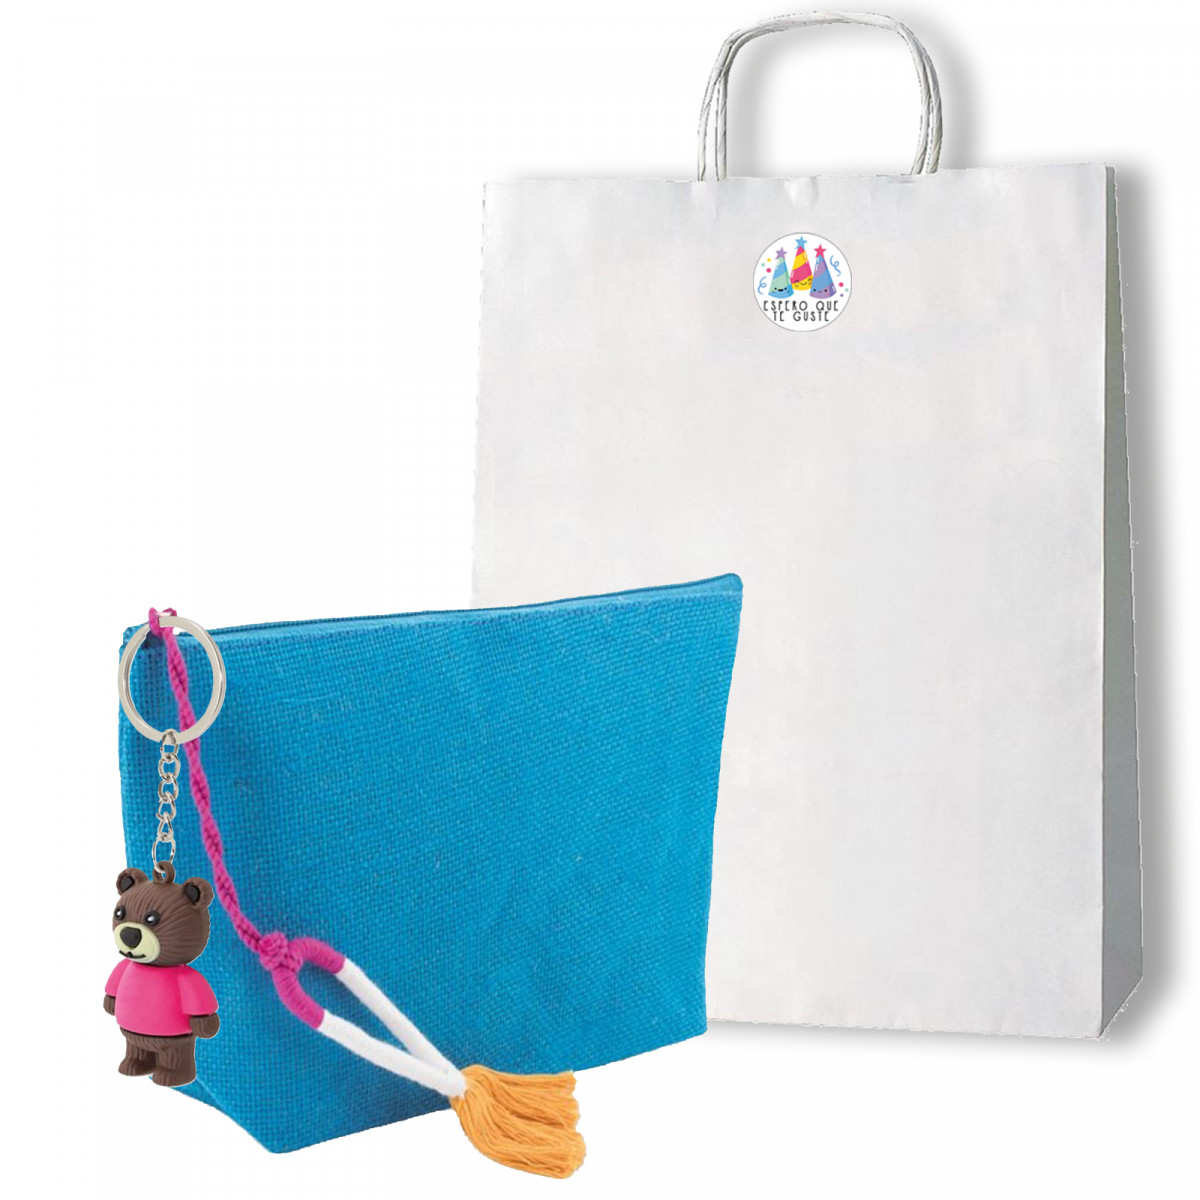 Beauty case con portachiavi a forma di orsetto in borsa con adesivo per regalo